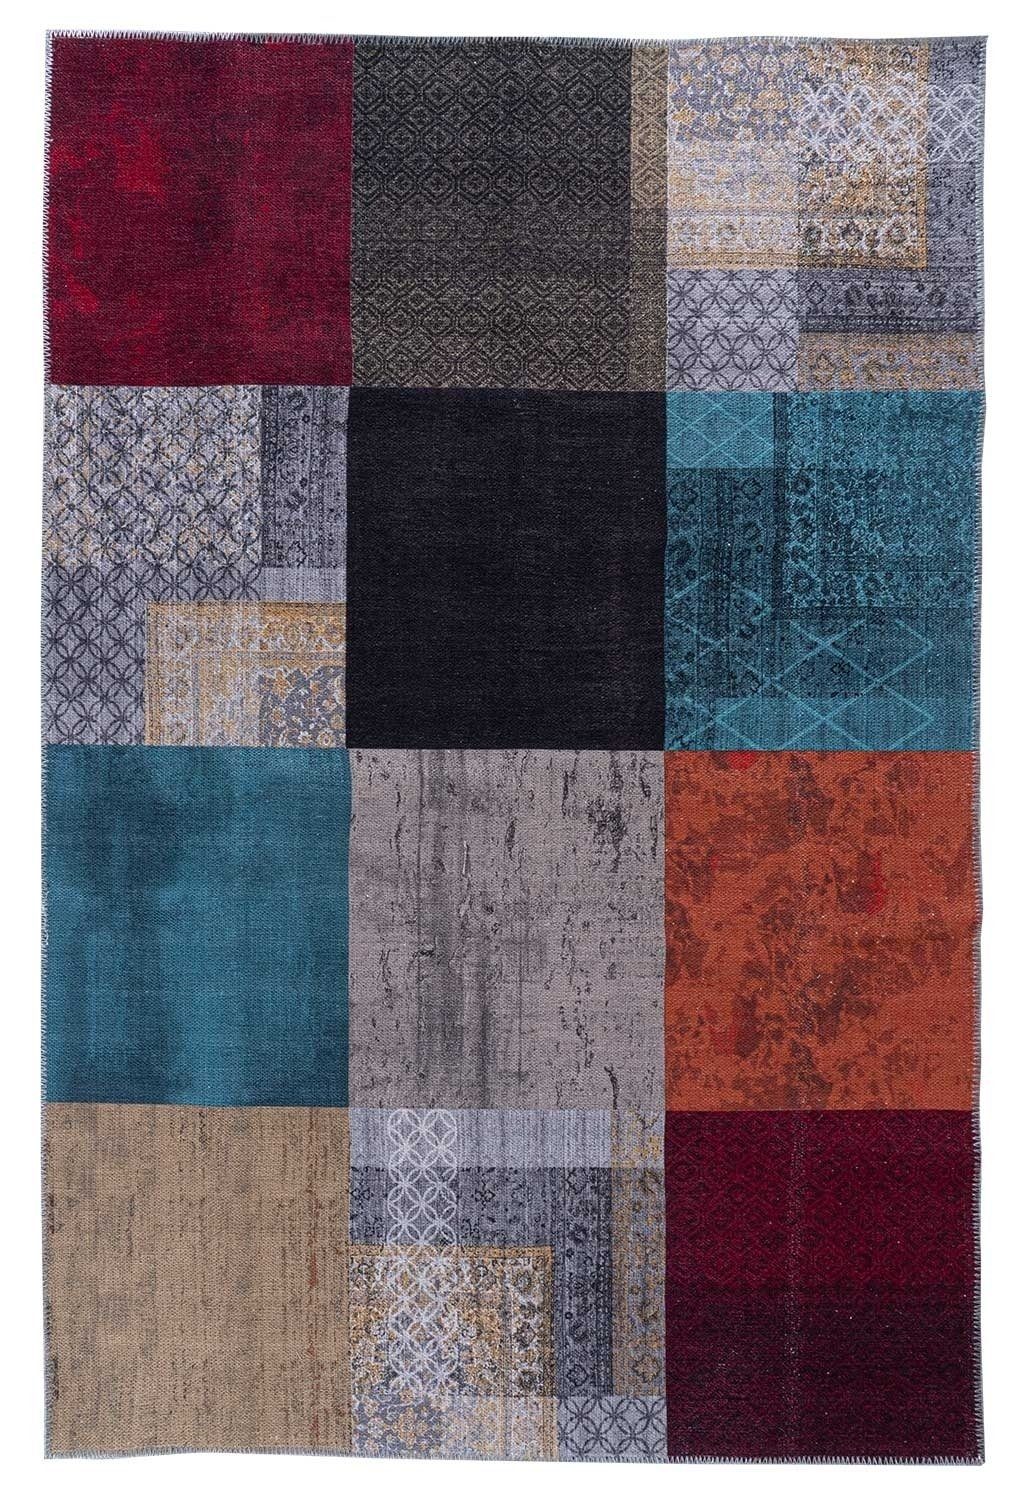 Teppich Vintageteppich, Mehrfarbig, B 160 cm, L 230 cm, rechteckig, Höhe: 4 mm